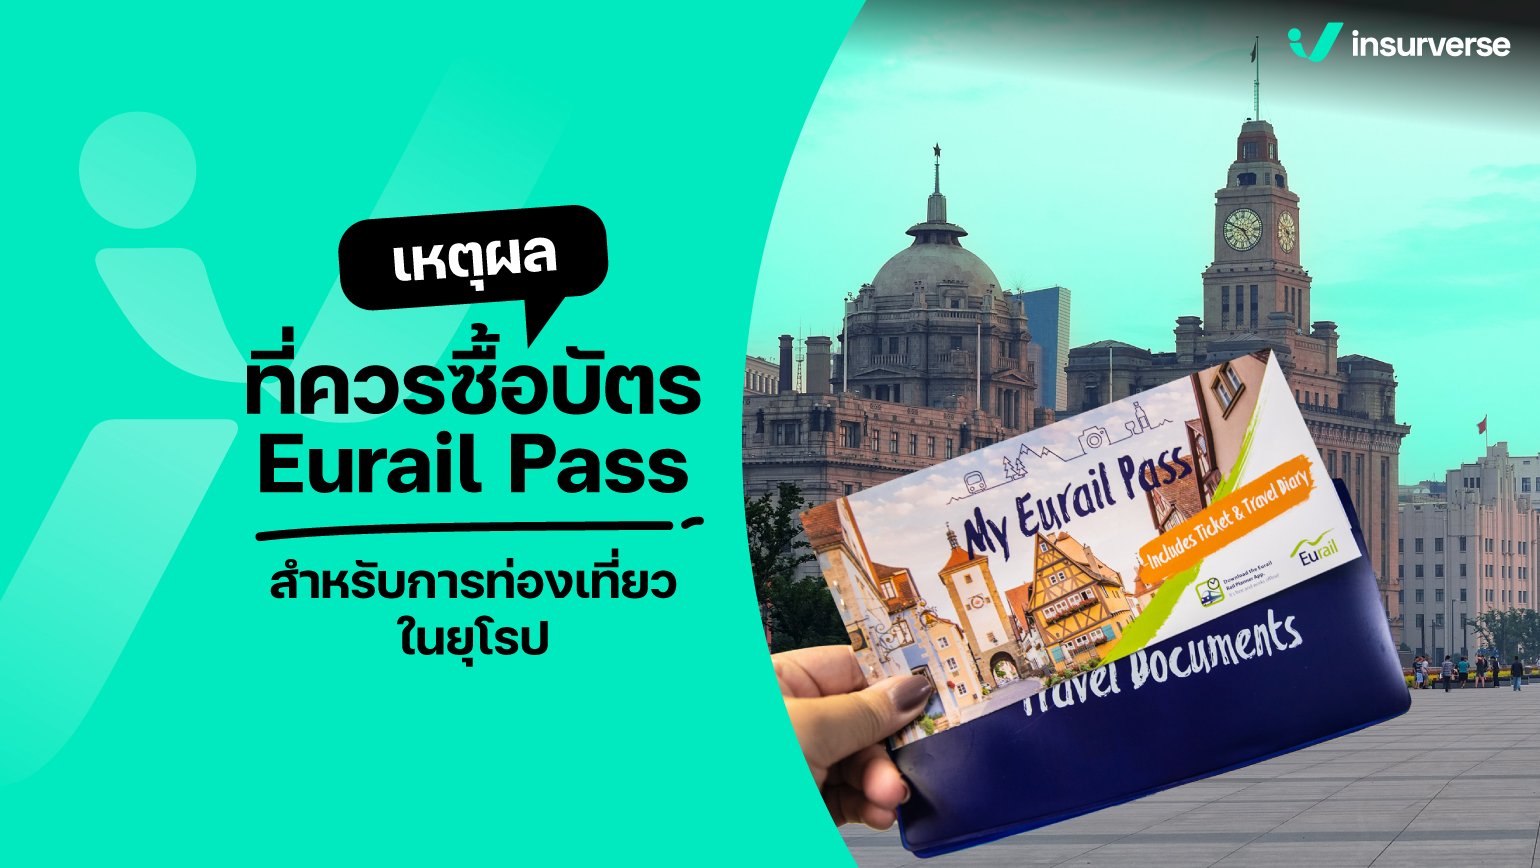 เปิดเหตุผลสุด WOW! ที่ควรซื้อบัตร Eurail Pass สำหรับการท่องเที่ยวในยุโรป